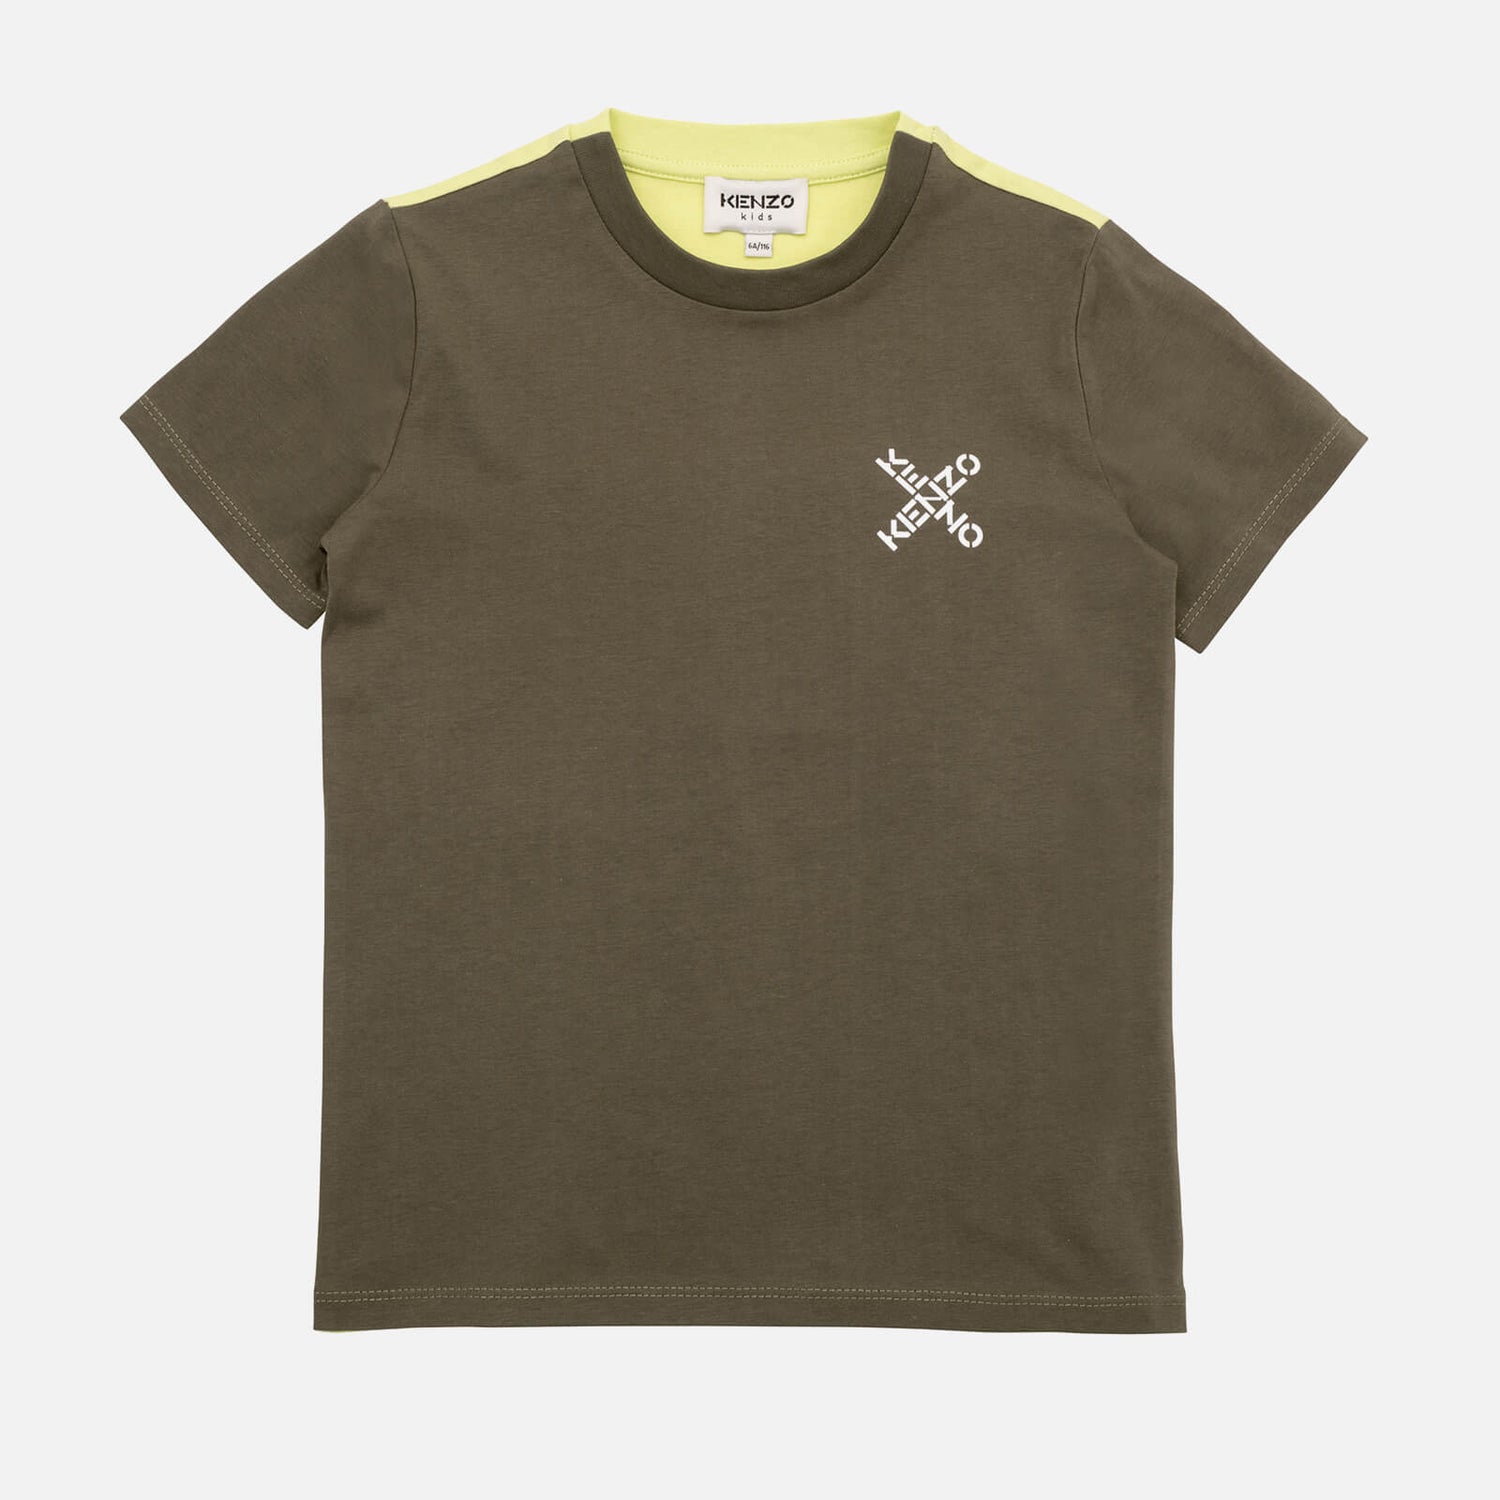 KENZO Short Sleeve T-Shirt - 4 Years